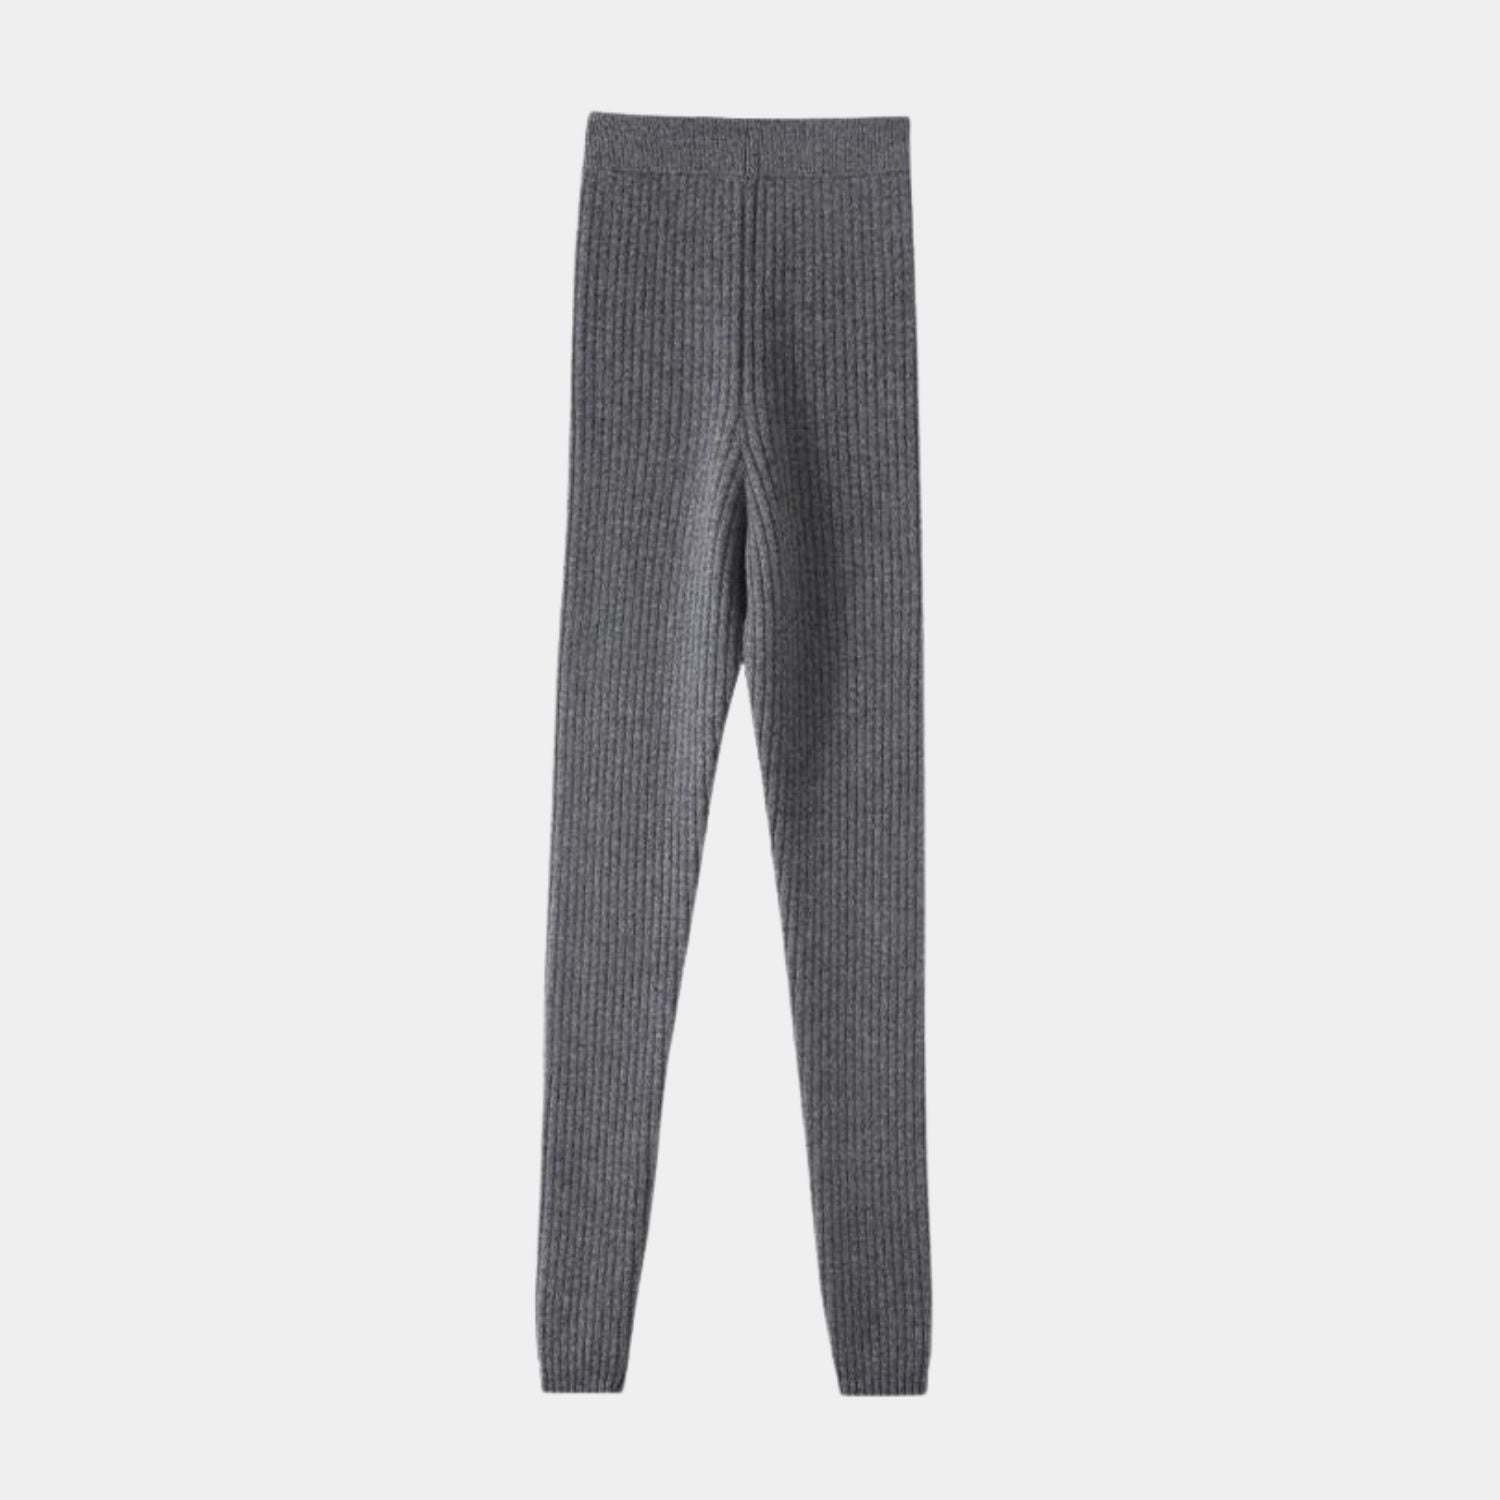 grey cashmere pants